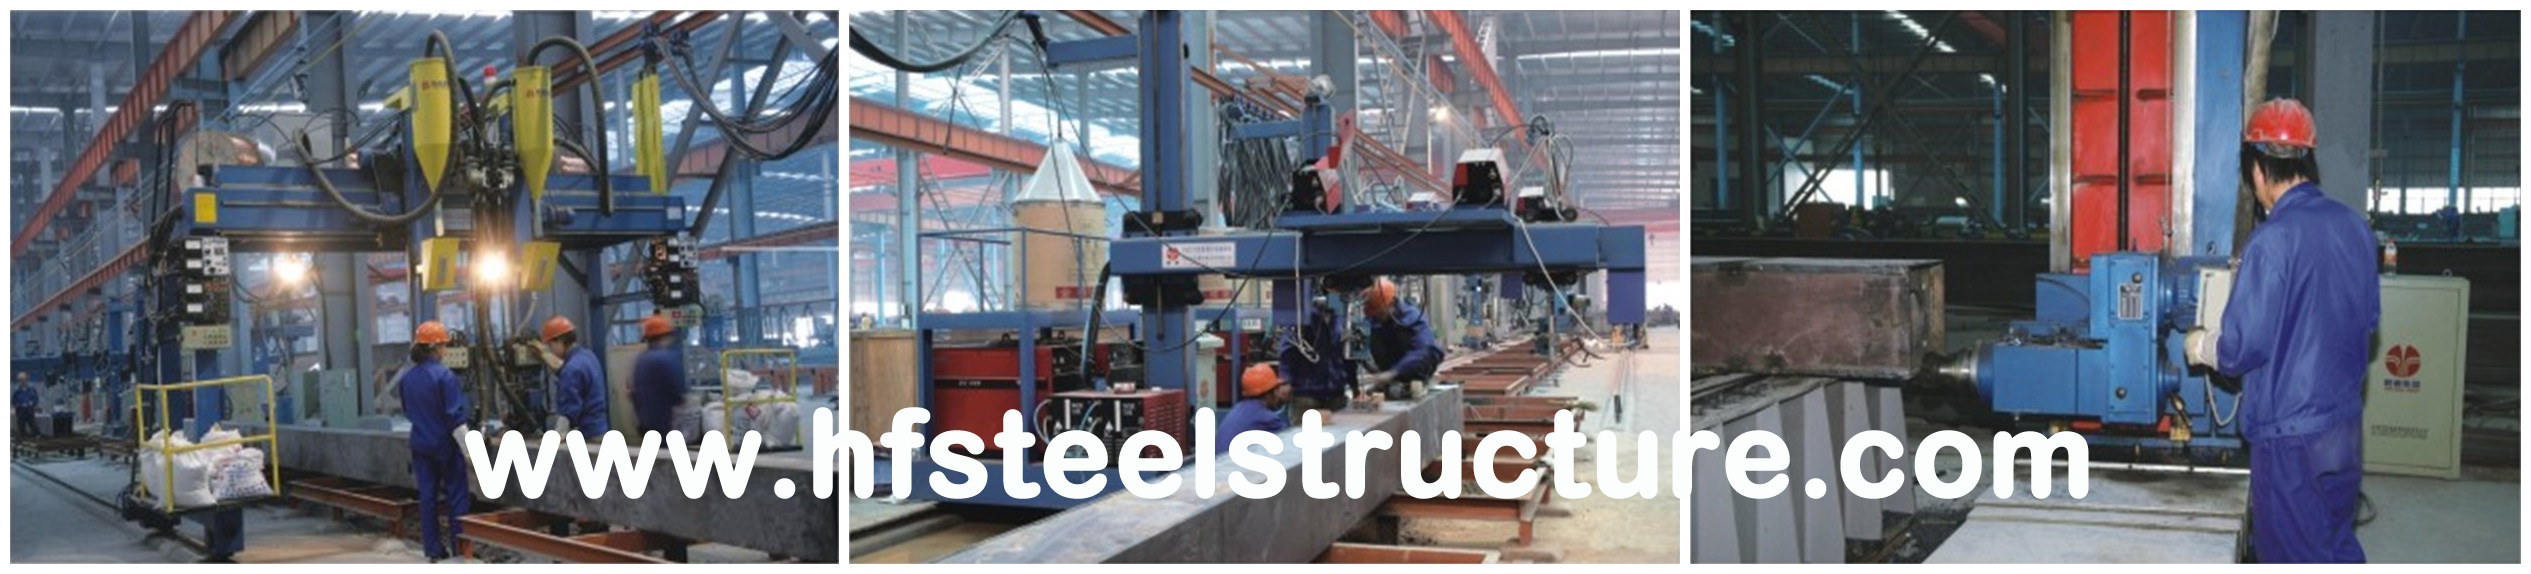 Costruzione d'acciaio industriale della struttura d'acciaio della luce delle costruzioni dell'ampio respiro